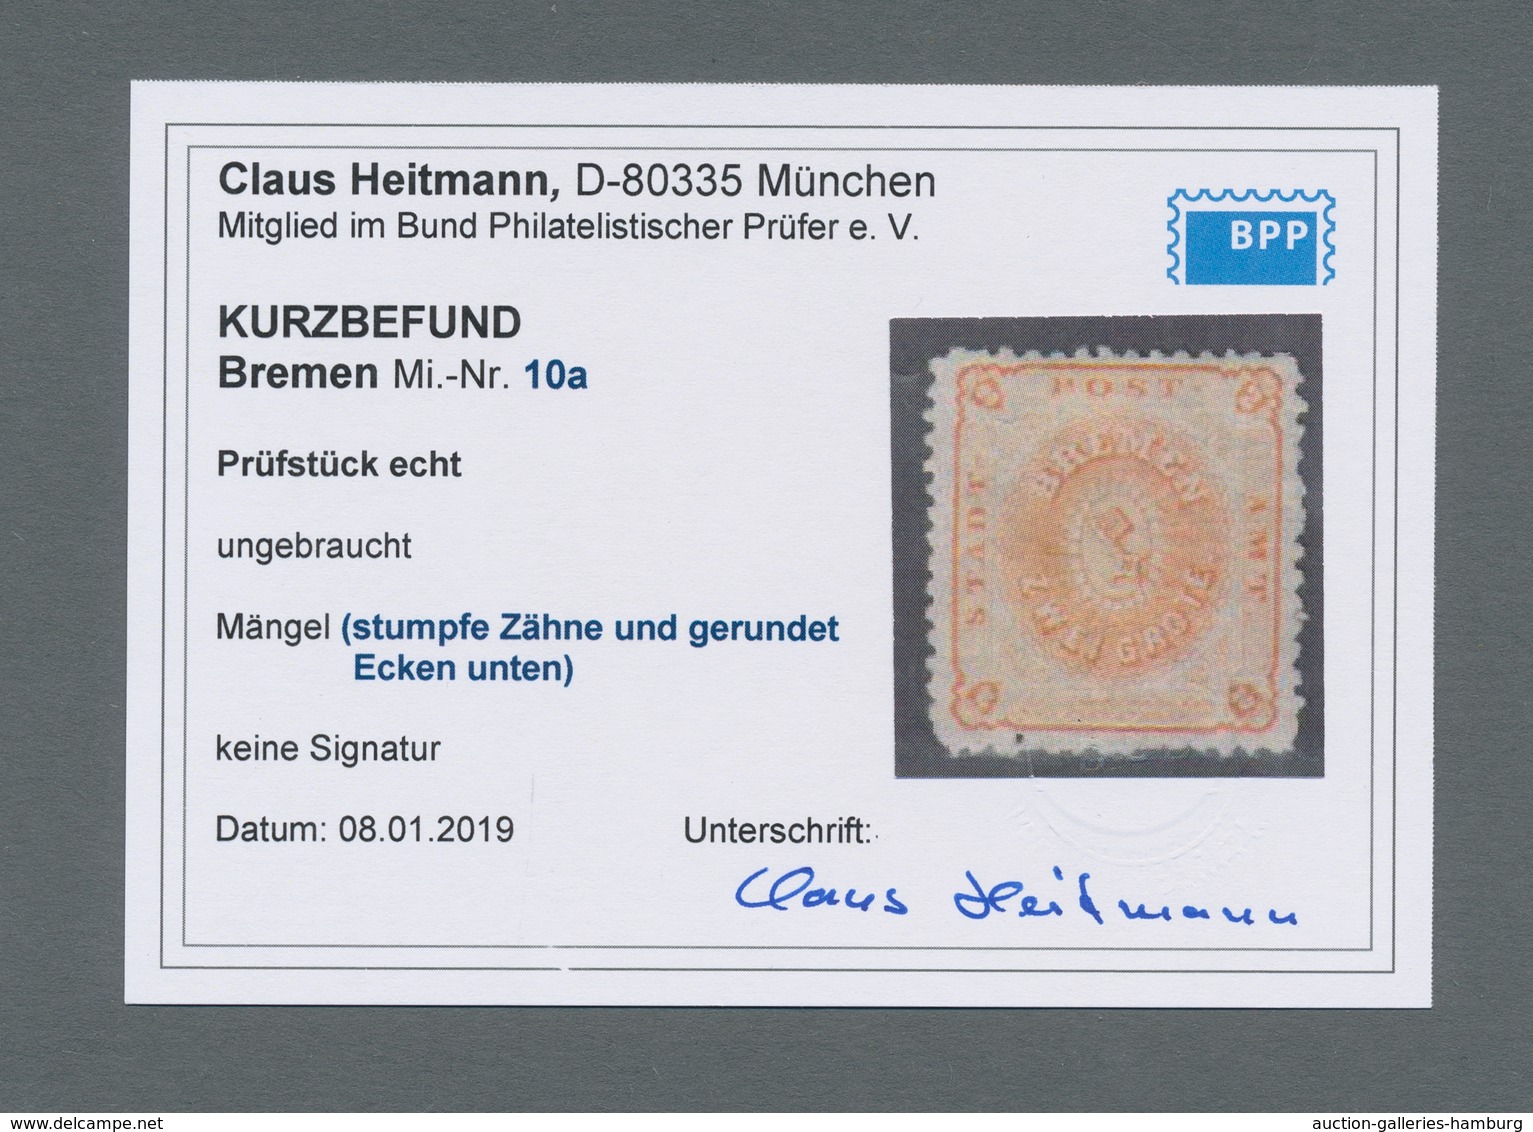 Bremen - Marken und Briefe: 1860-66, sechs frabfrische Werte: je zweimal Mi. 3 a und 7 B sowie 10 a